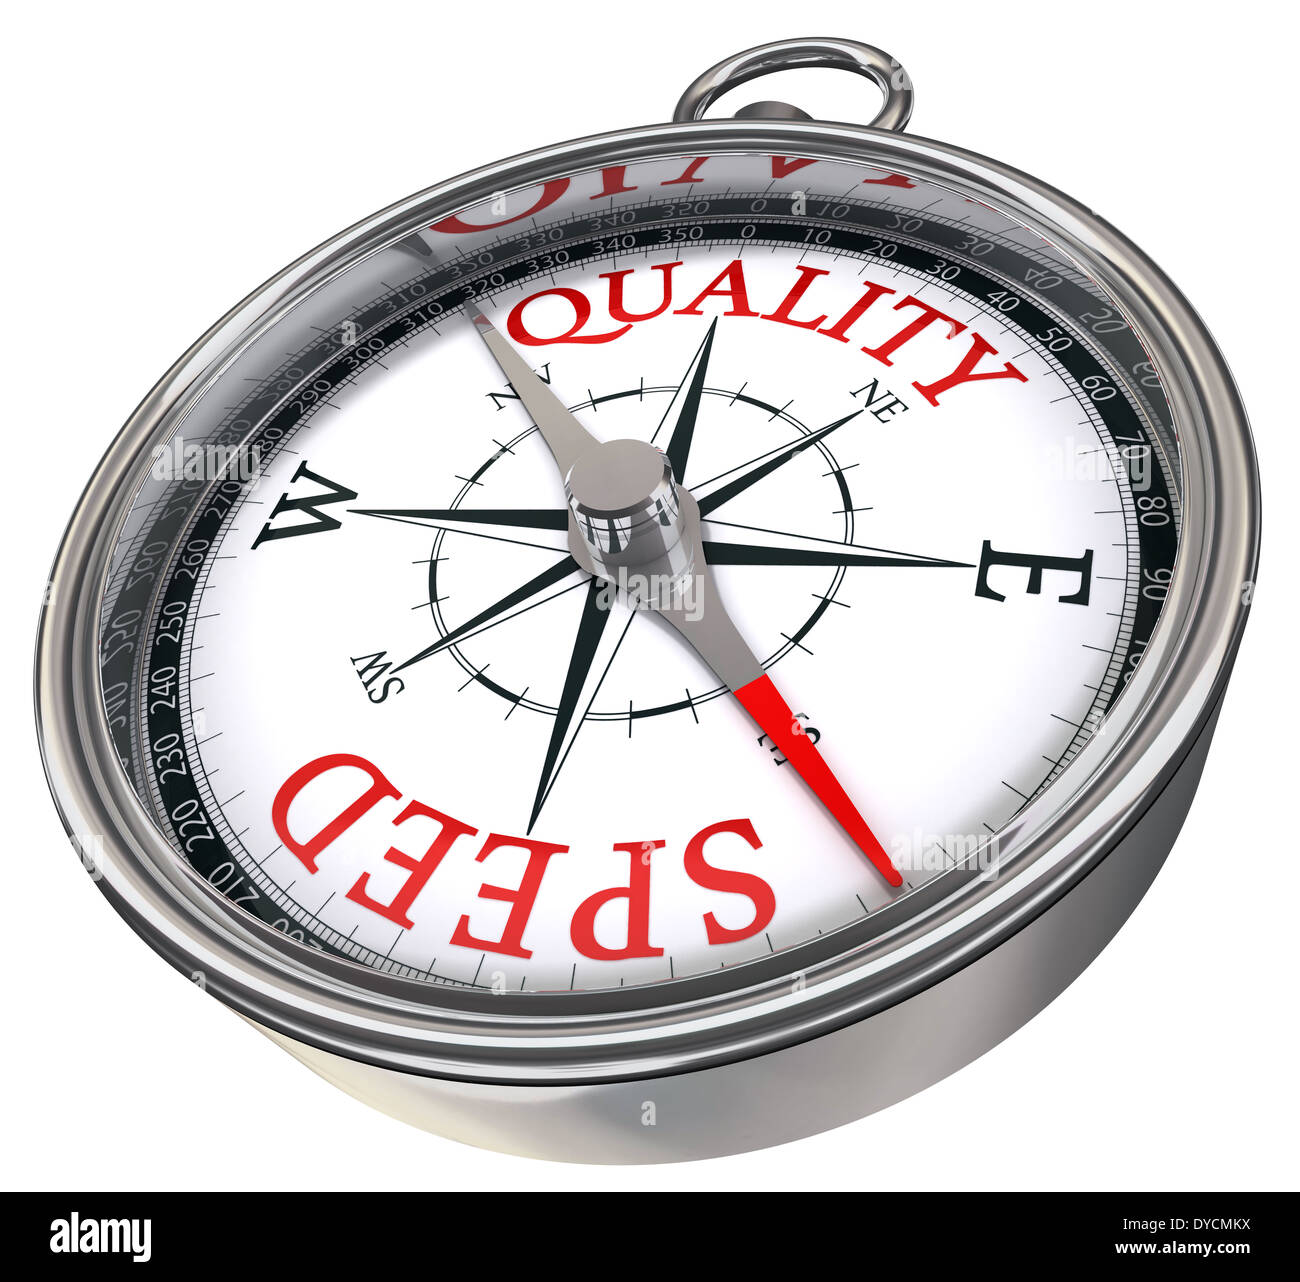 Qualität versus Geschwindigkeit gegensätzliche Wörter Konzeptbild auf Kompass mit roten Buchstaben auf weißem Hintergrund isoliert Stockfoto